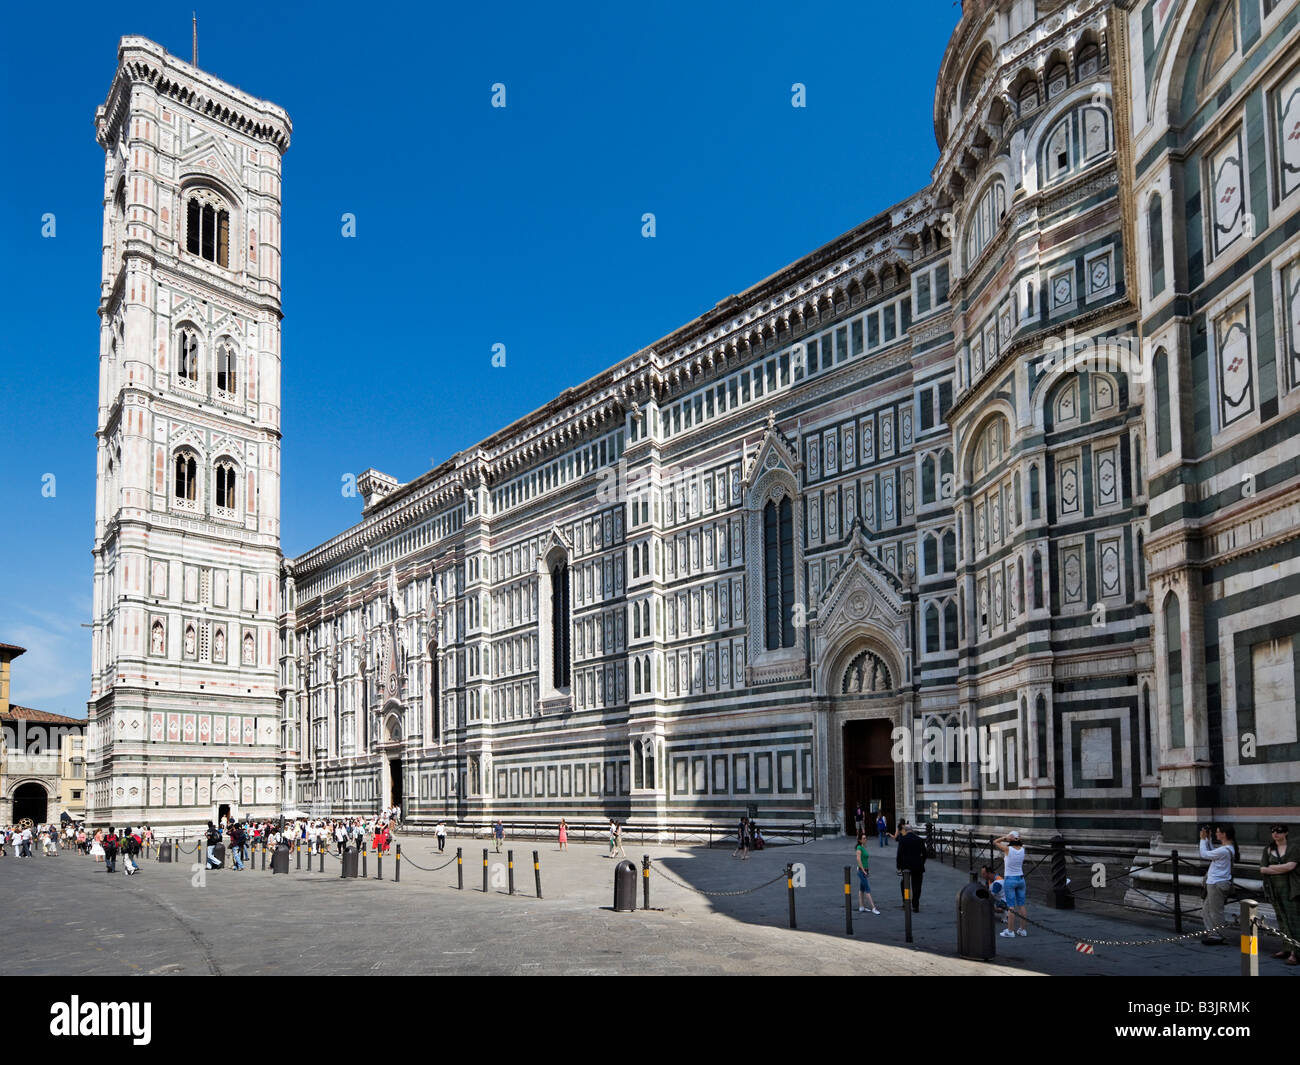 Basilica di Santa Maria del Fiore (the Duomo) and Giotto's Campanile from Piazza del Duomo, Florence, Tuscany, Italy Stock Photo